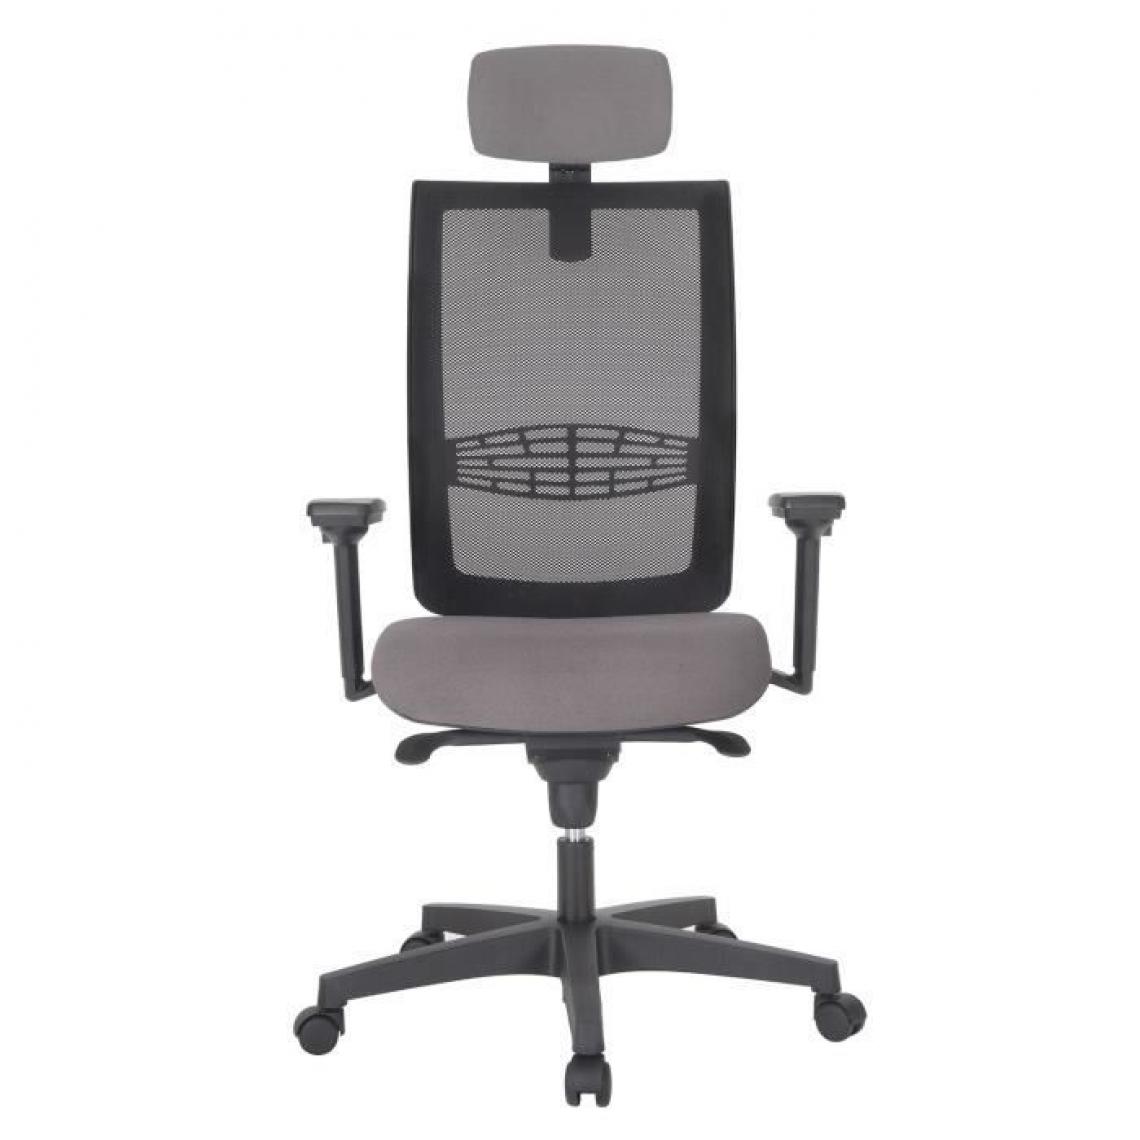 Cstore - INSPIRATION Chaise de bureau - Dossier maille résille gris - L 69 x P 69 x H 126 cm - Chaises